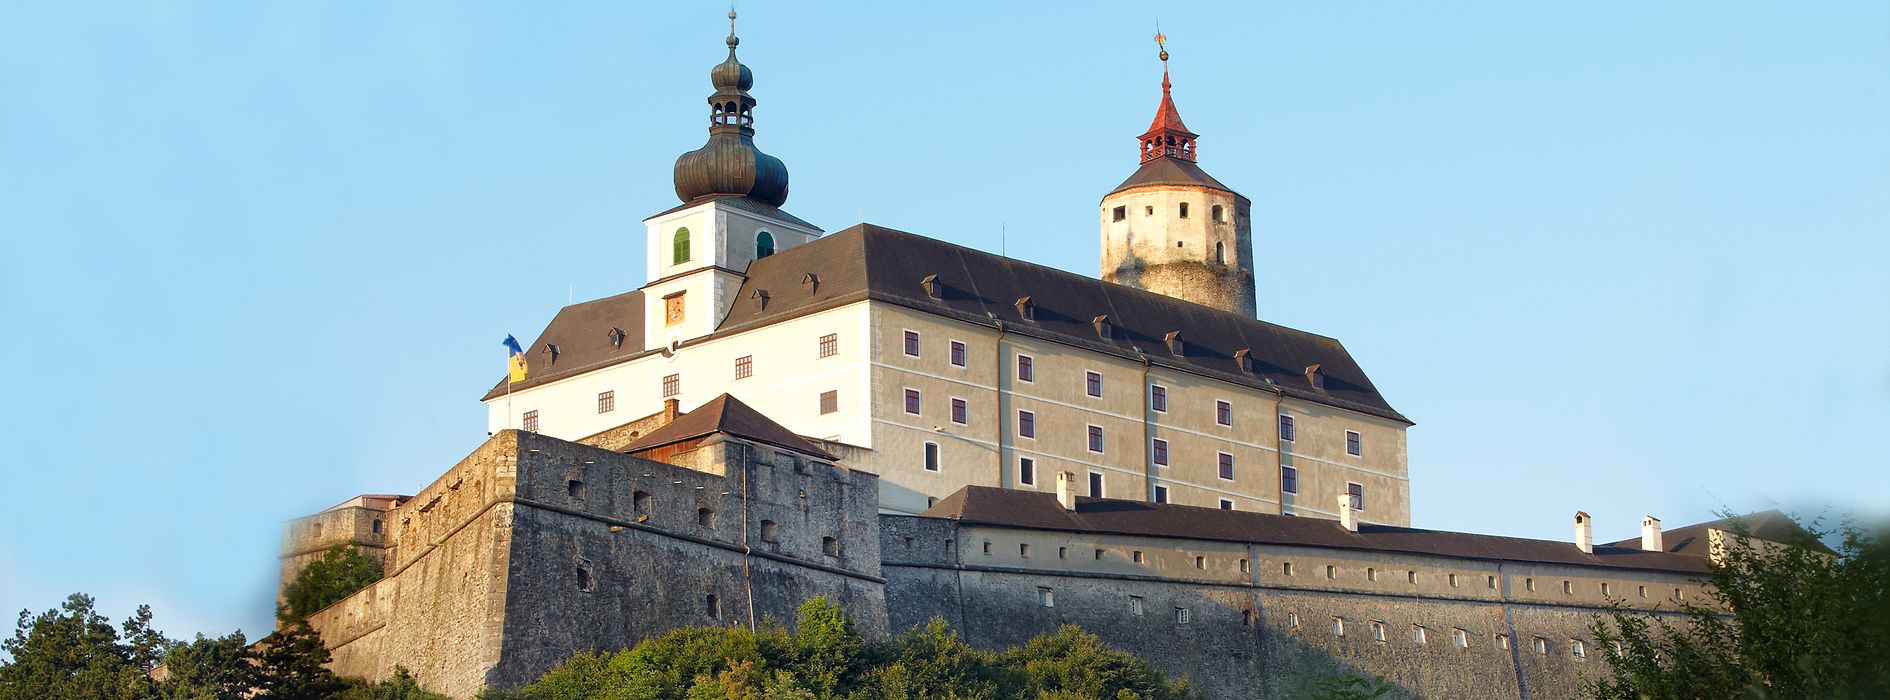 Castle Forchtenstein